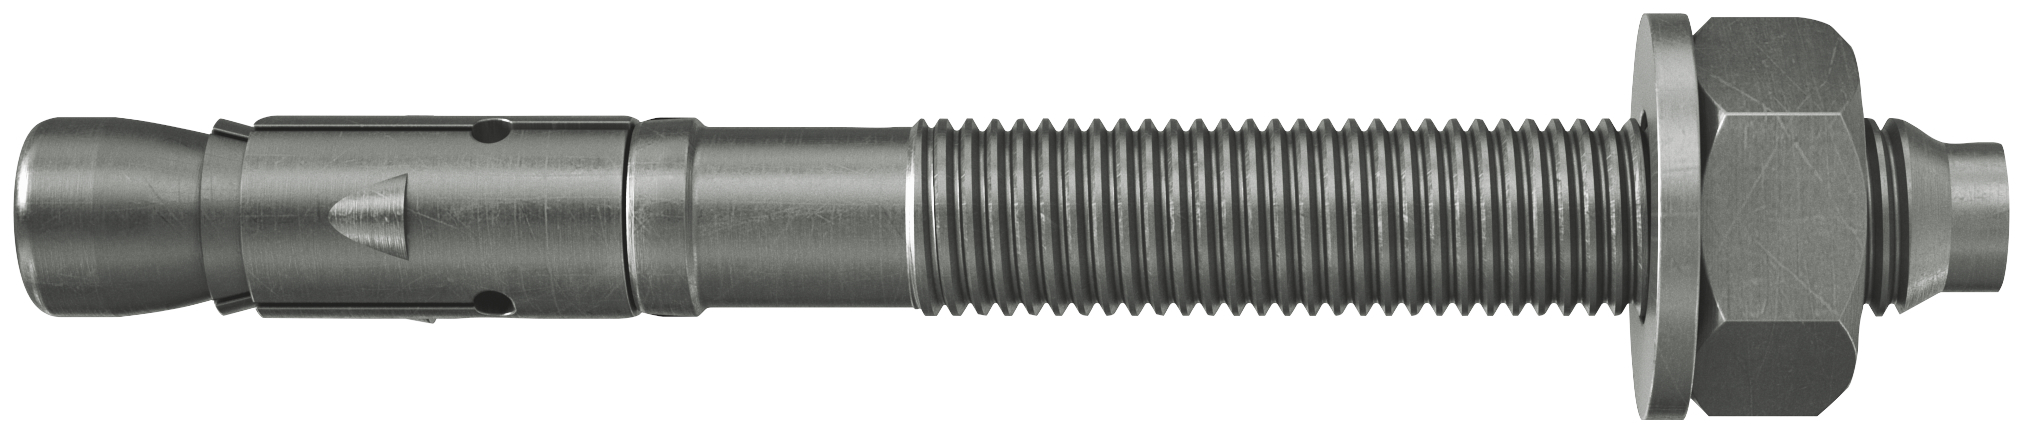 fischer Tassello acciaio FAZ II 10/10 A4 (50 Pz.) L'ancorante ad espansione ad alte prestazioni per carichi statici su calcestruzzo fessurato e per applicazioni sismiche. Versione in acciaio inossidabile con classe di resistenza alla corrosione CRC III..